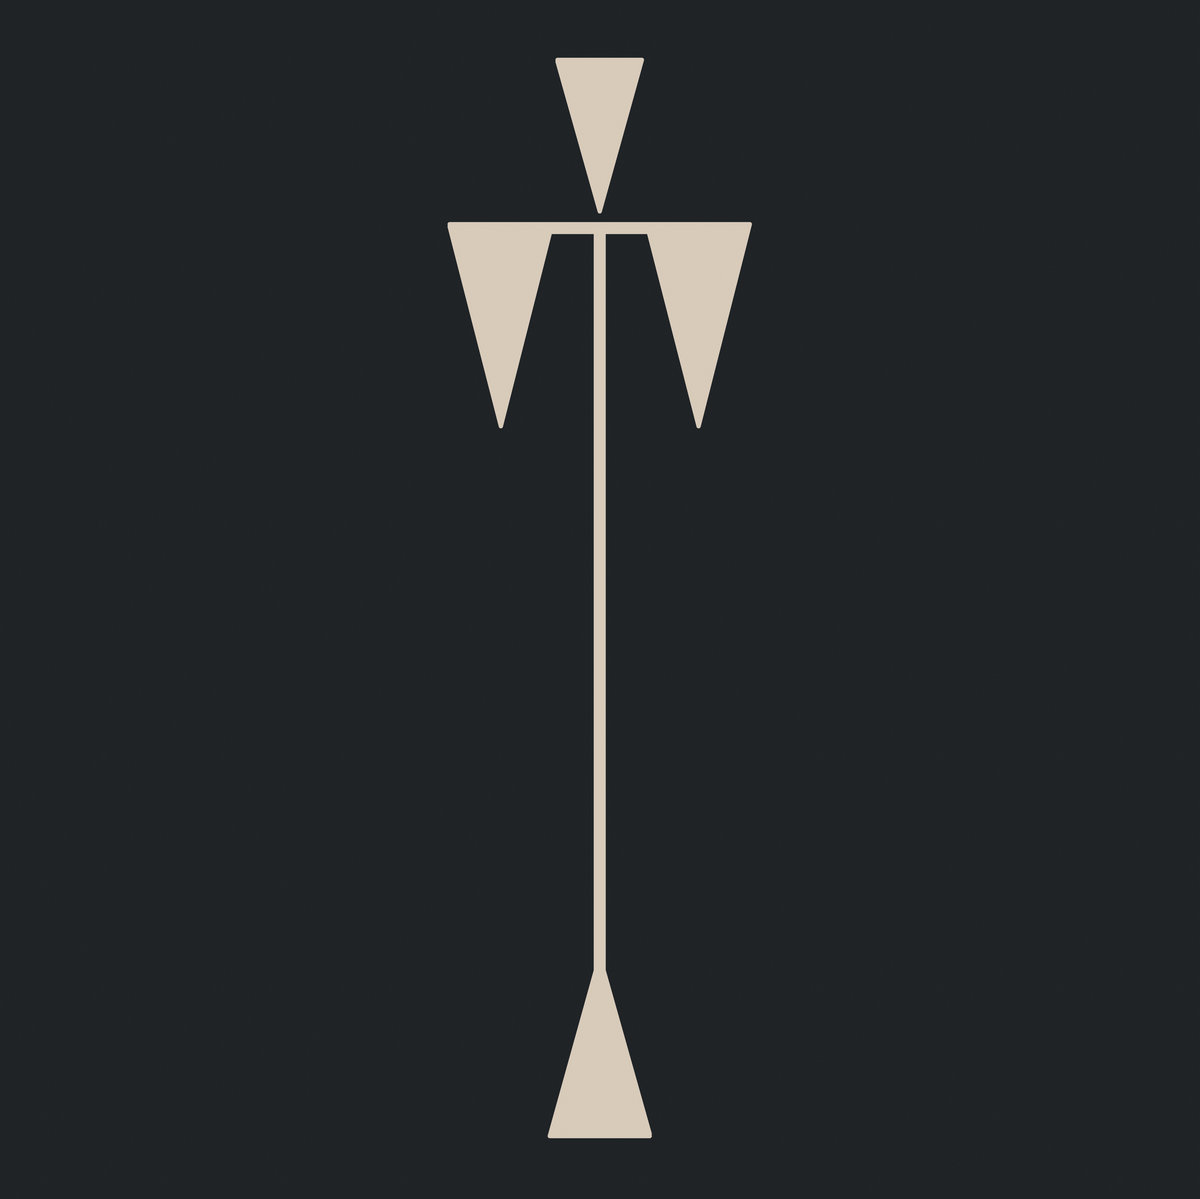 TOMAGA - EXTENDED PLAY 1 AND 2 - LP VINYL 33 TOURS DISQUE VINYLE LP PARIS MONTPELLIER GROUND ZERO PLATINE PRO-JECT ALBUM TOURNE-DISQUE MUSICAL FIDELITY KANTU YU BRINGHS ORTOFON 45 TOURS SINGLES ALBUM ACHETER UNE PLATINE VINYLS BOUTIQUE PHYSIQUE DISQUAIRE MAGASIN CENTRE VILLE INDES INDIE RECORD STORE INDEPENDENT INDEPENDANT